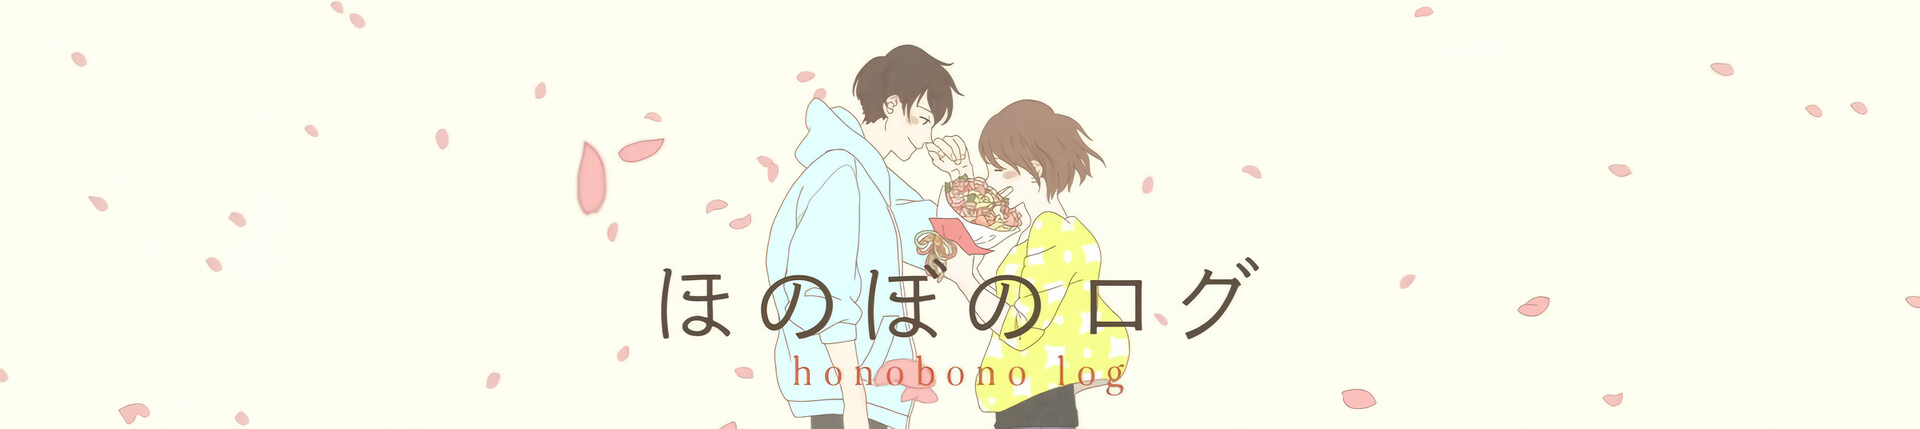 Honobono Log